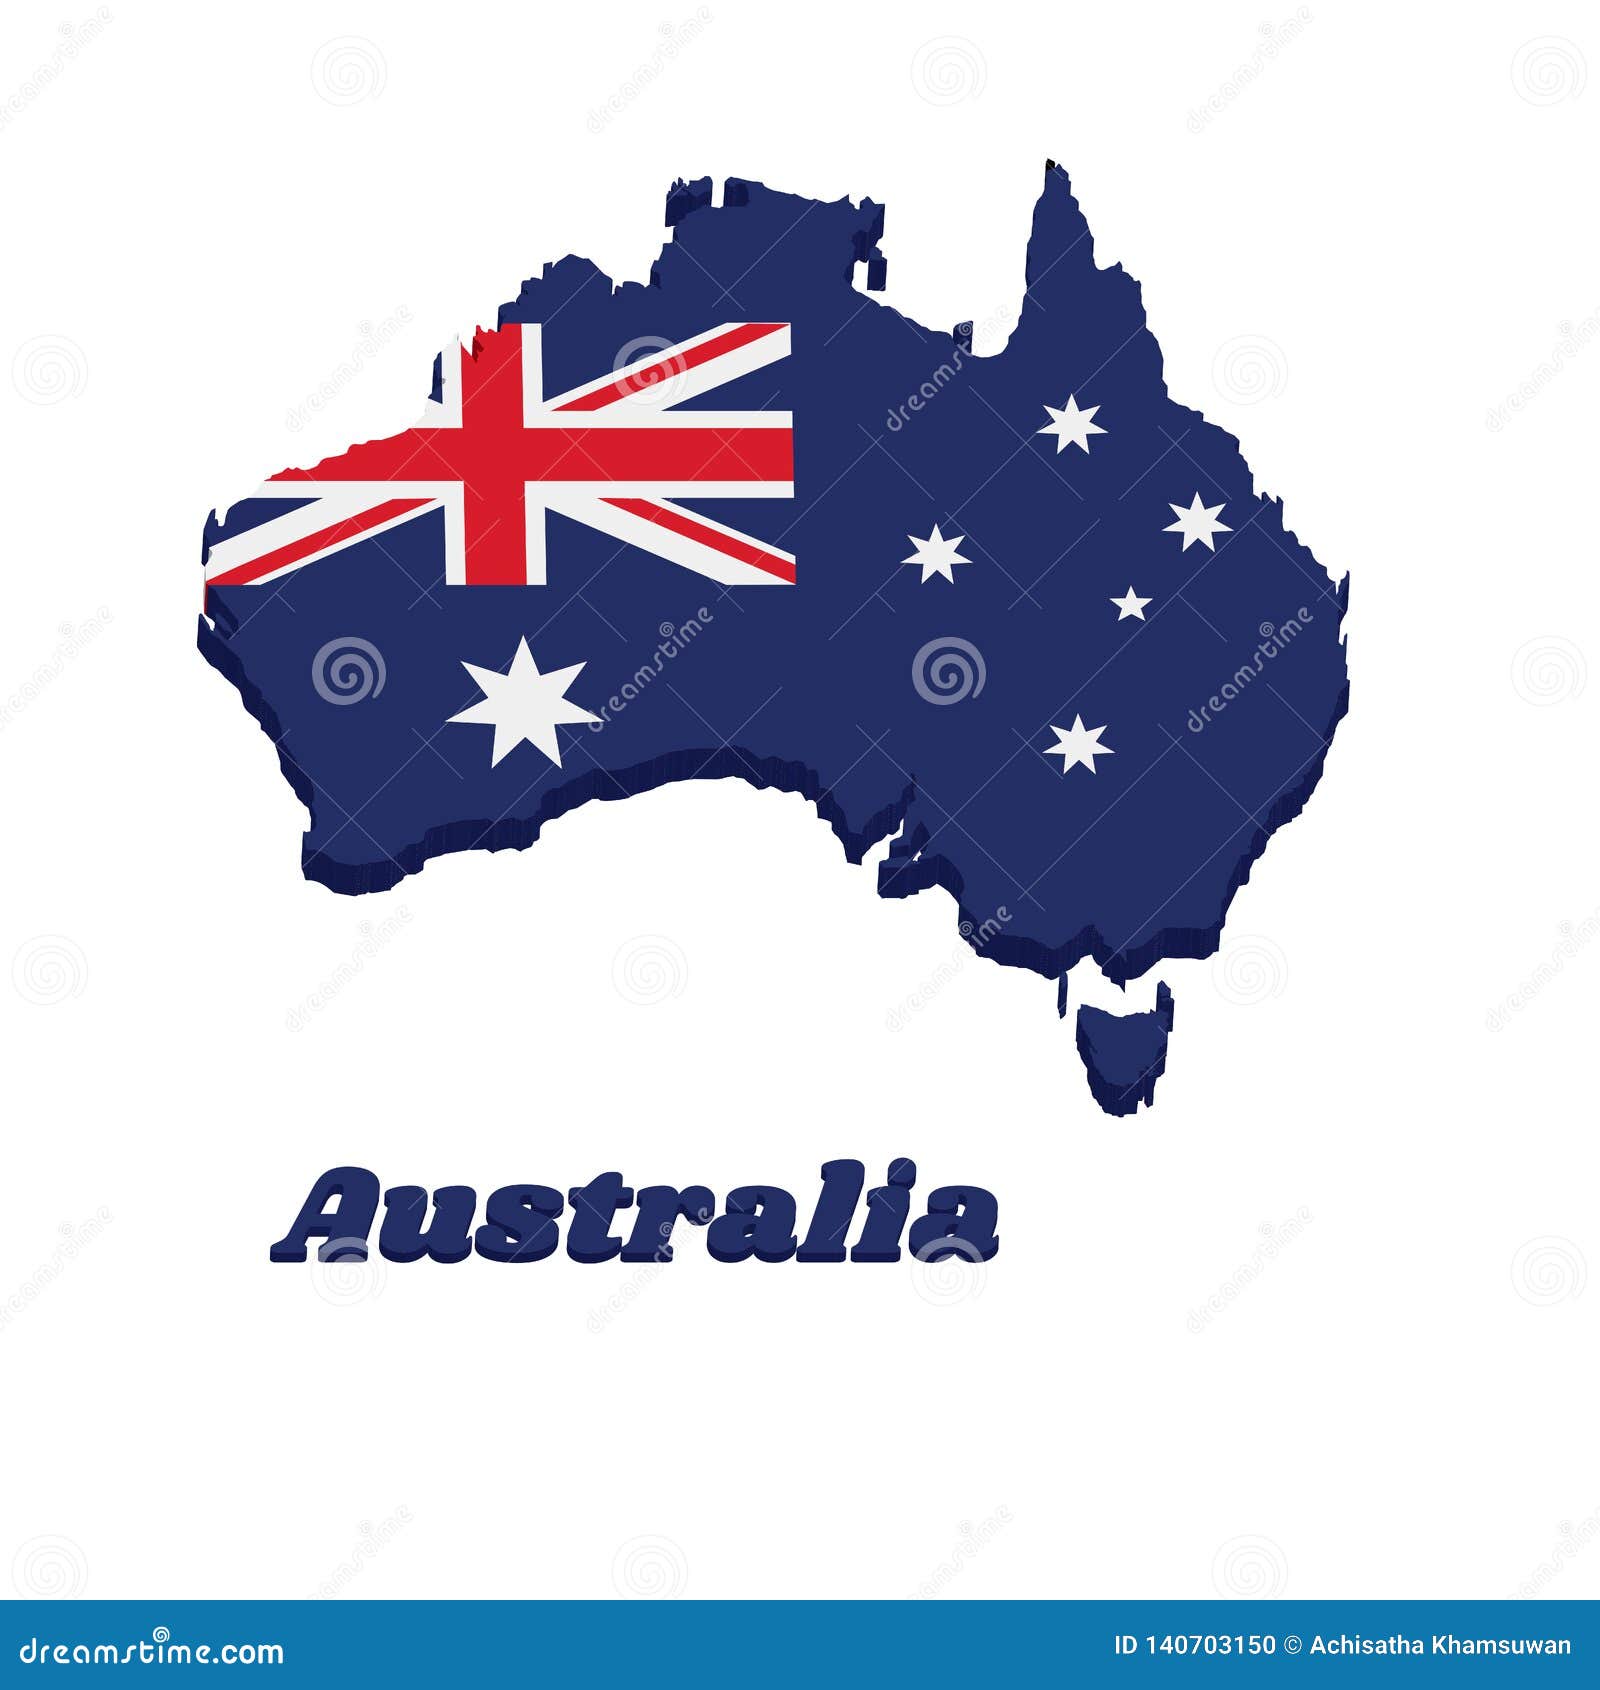 Quốc kỳ Úc: Sự đa dạng và hoà bình, đó chính là thông điệp mà quốc kỳ Úc muốn gửi đến mọi người. Hãy cùng chiêm ngưỡng cờ của đất nước này và nhìn thấy sự đẹp đẽ và ý nghĩa đằng sau nó.